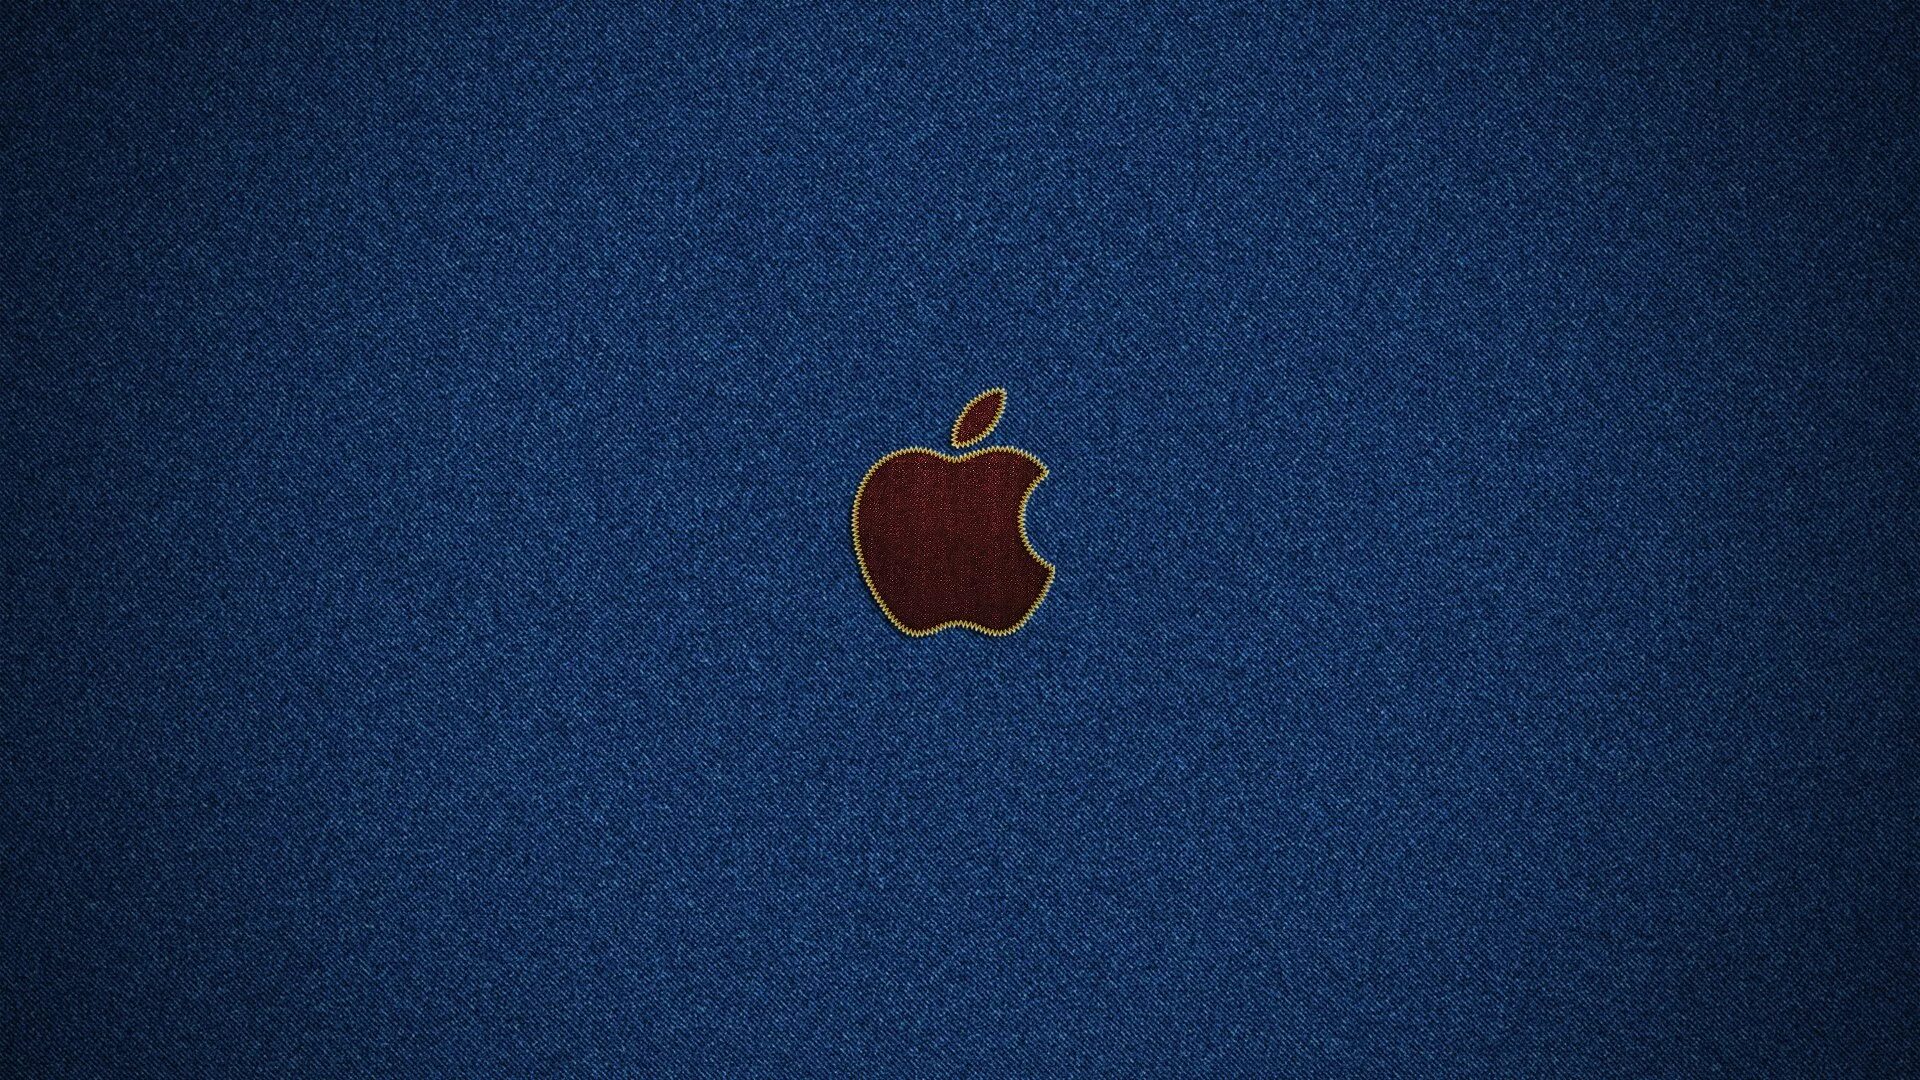 Обои эппл. Обои Apple. Обои на ноутбук. Рабочий стол Apple. Обои для iphone.